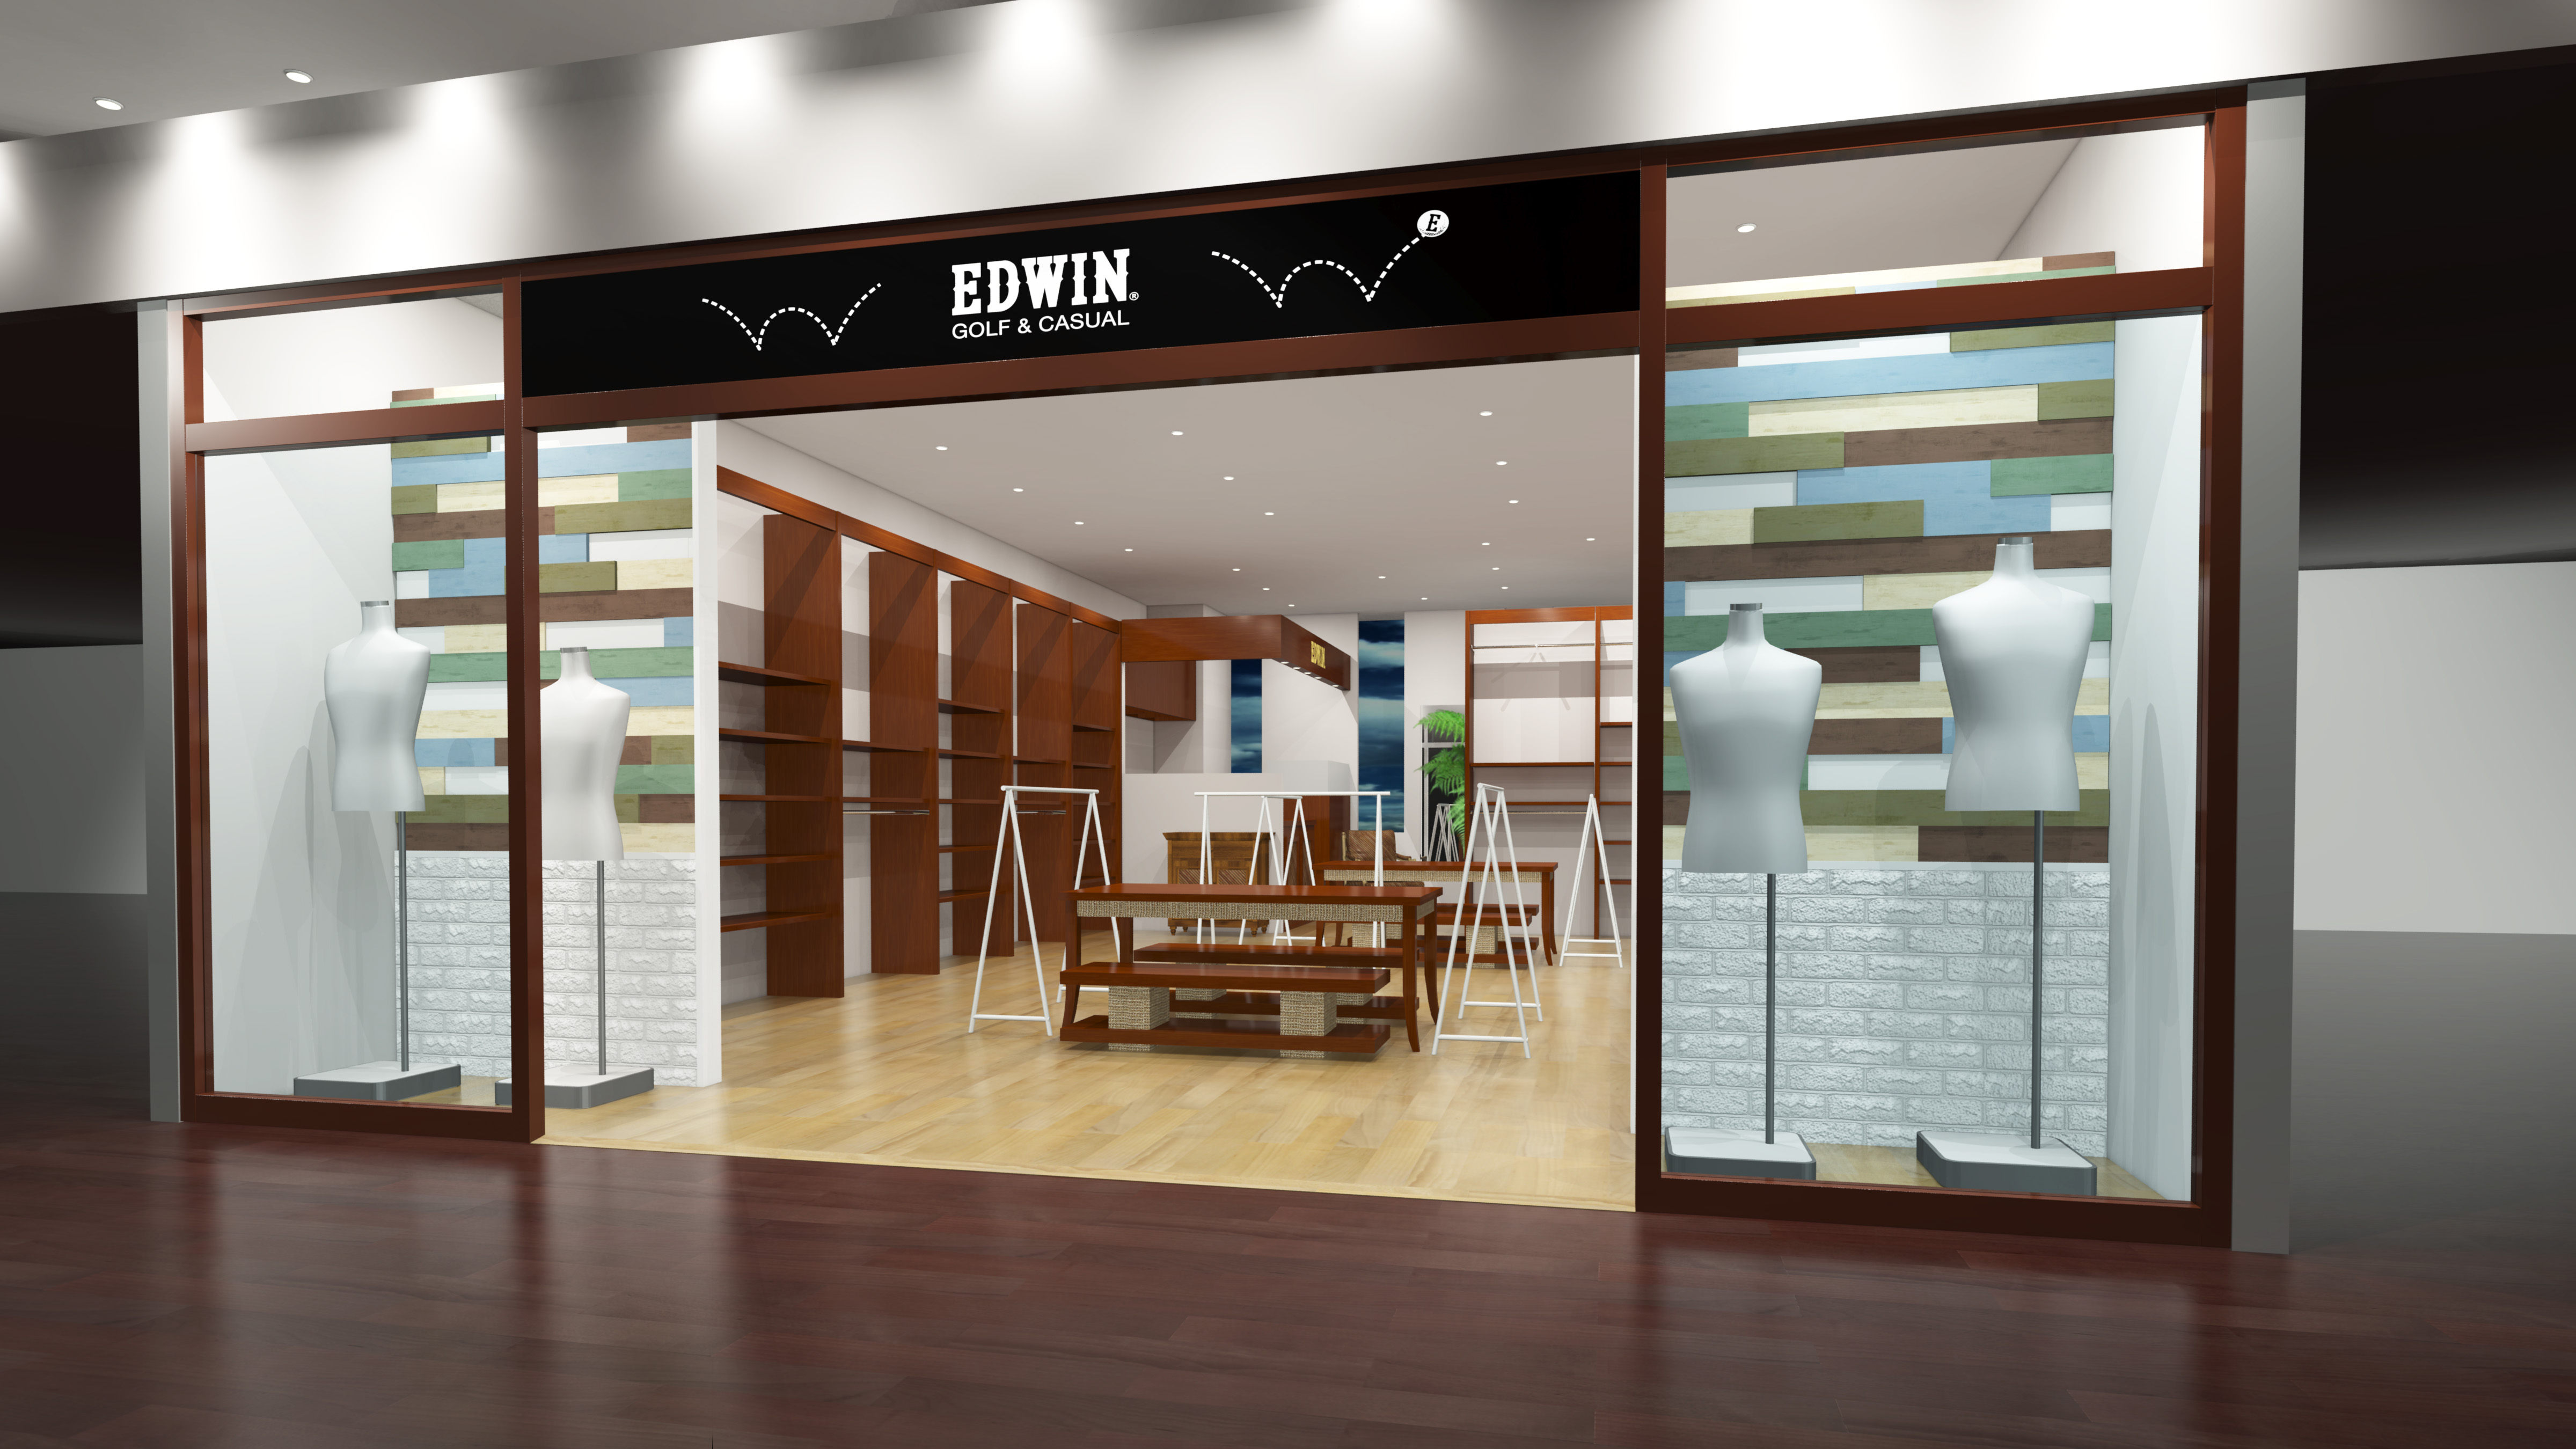 エドウインの新コンセプトショップ Edwin Golf Casual 銀座店 がオープンします Edwinのプレスリリース